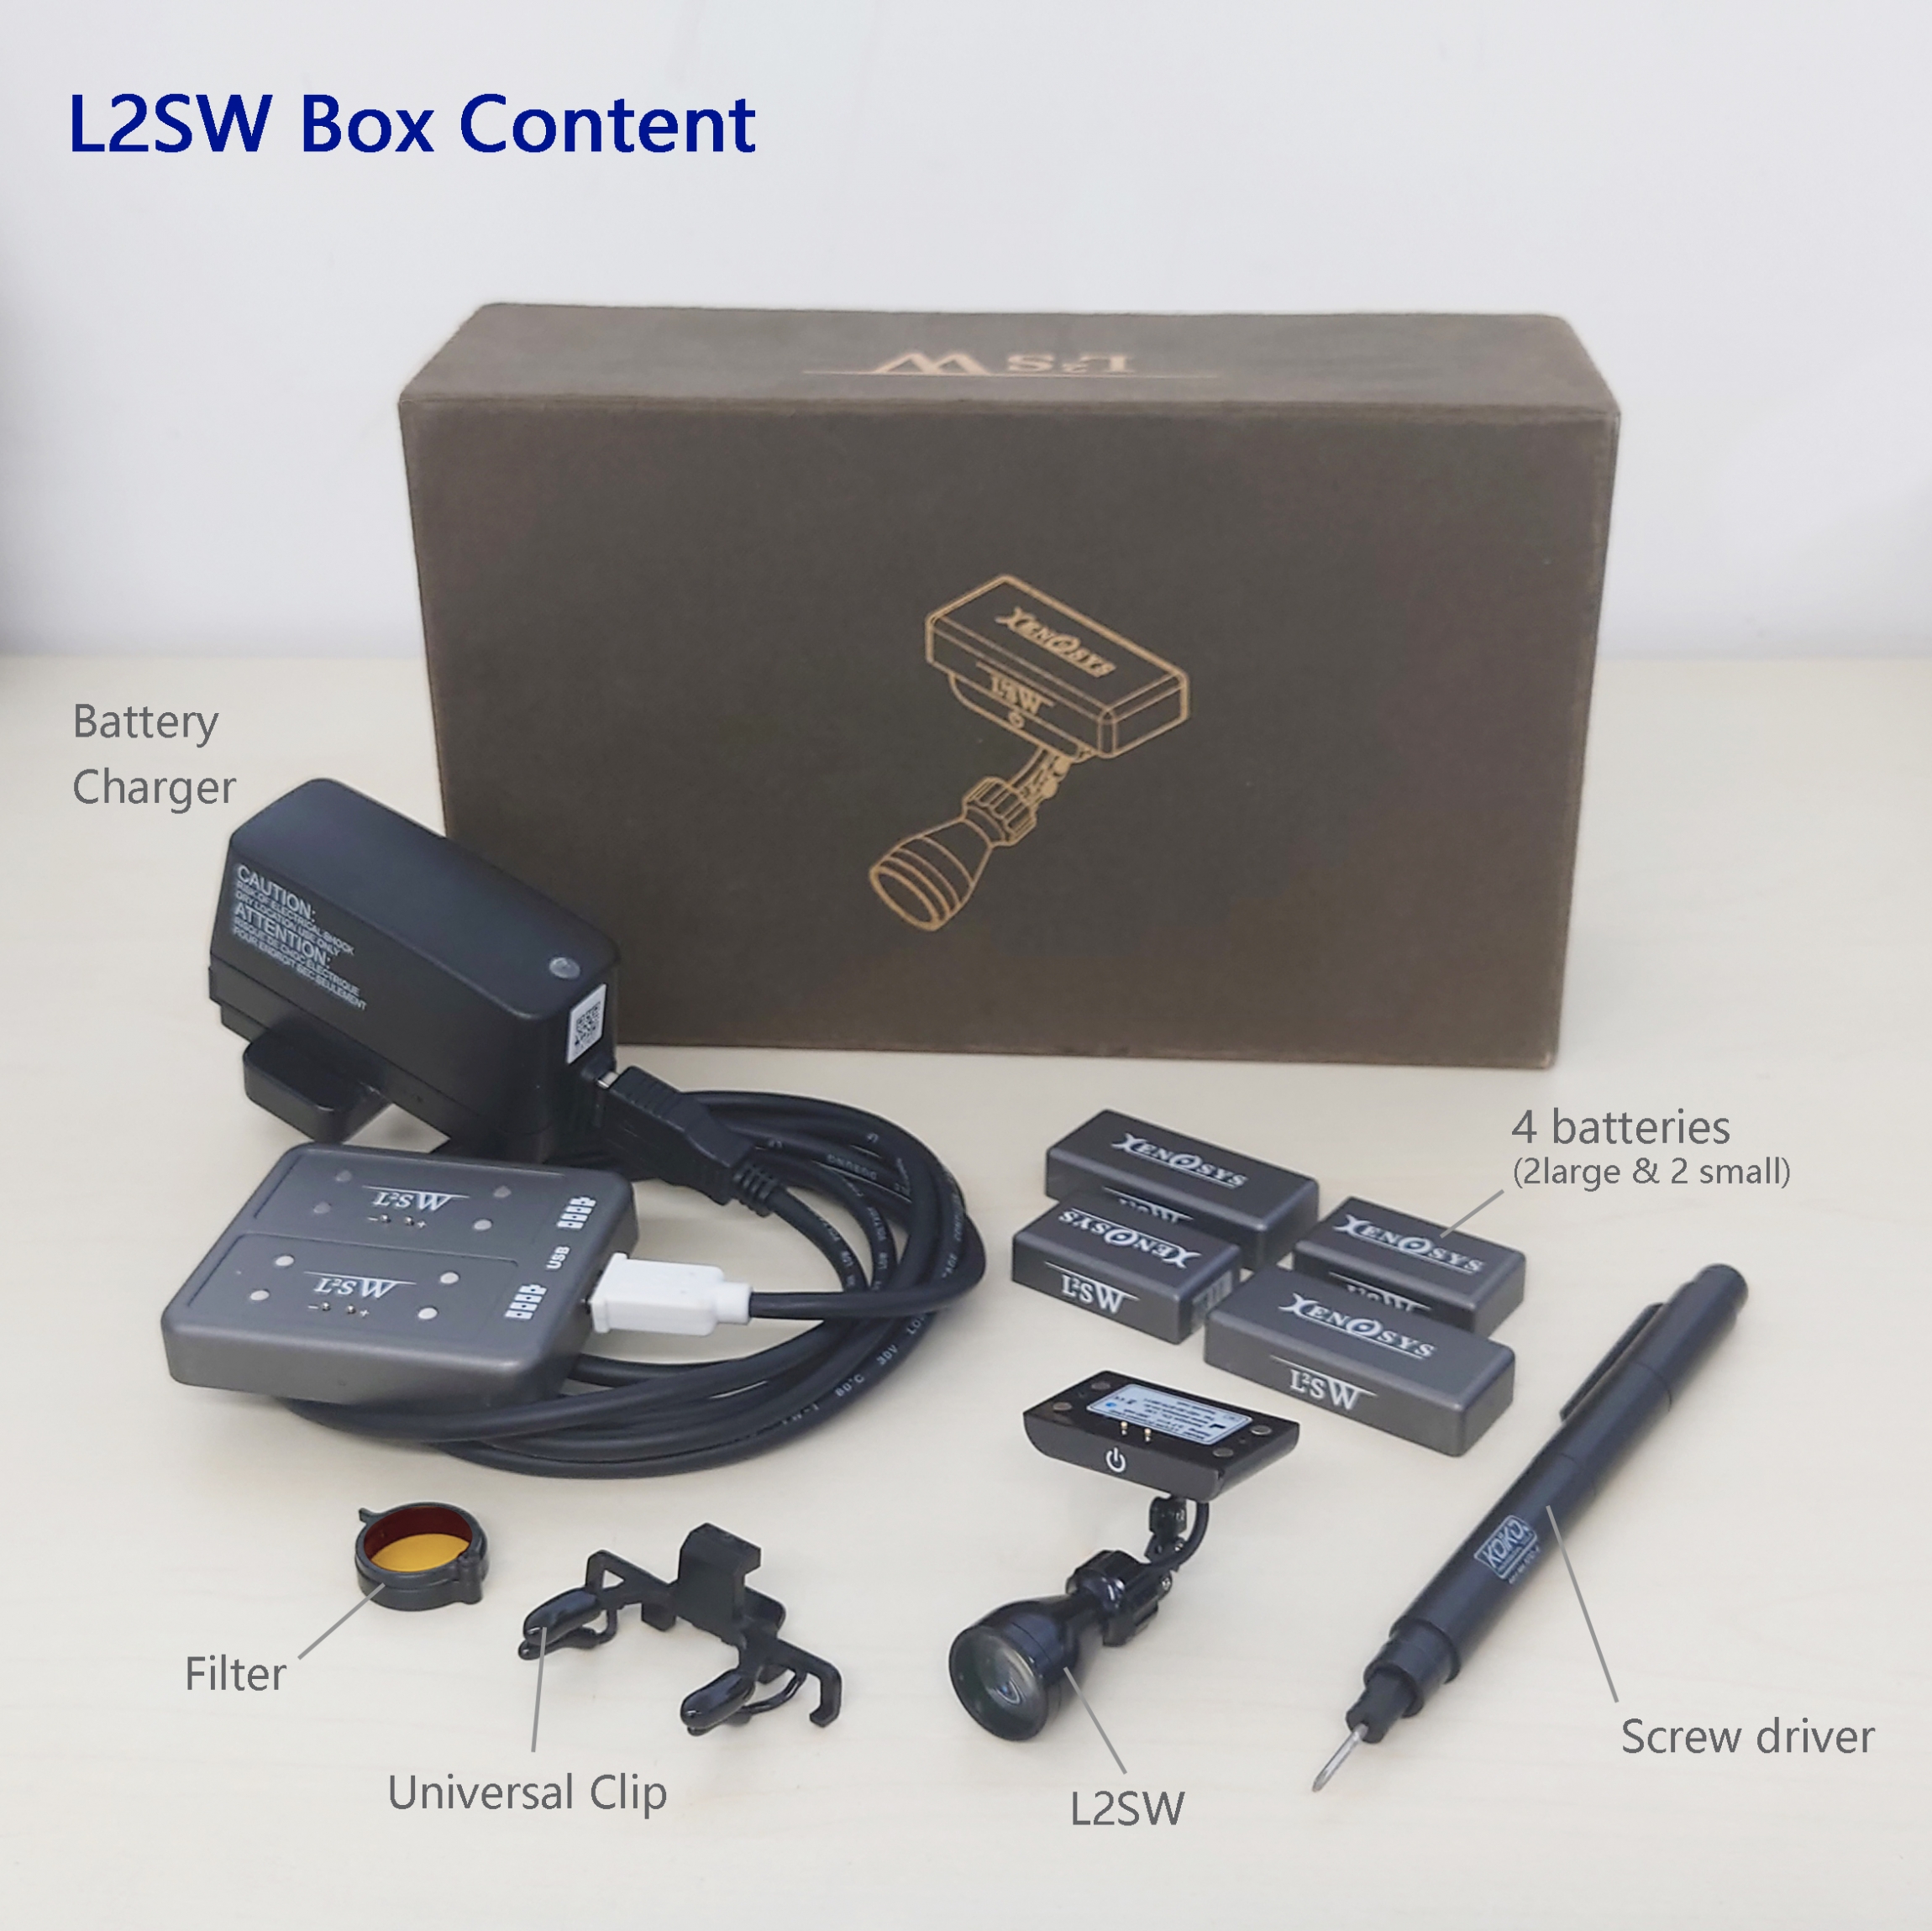 L2SW Box